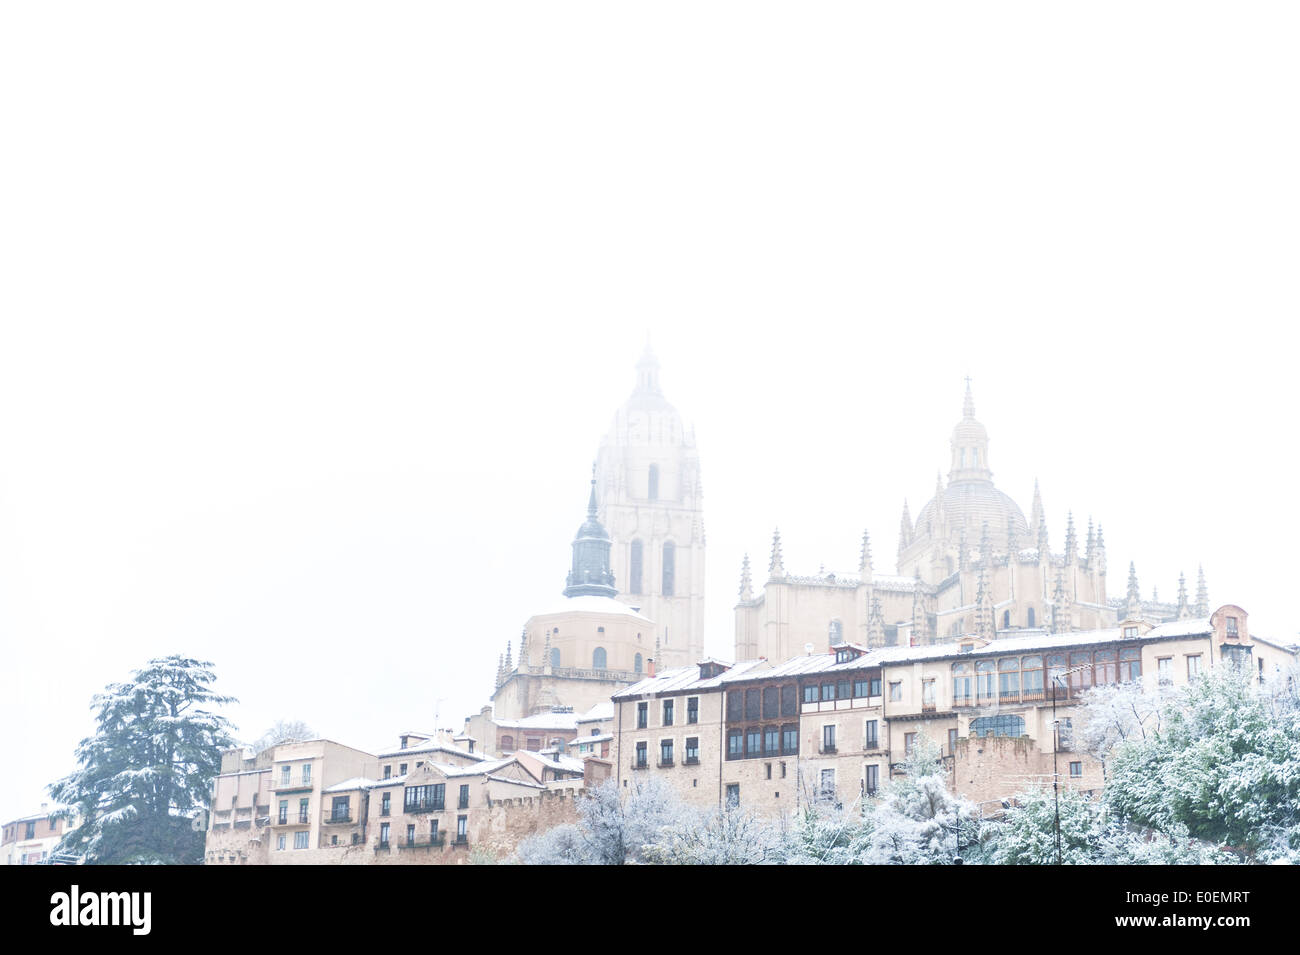 La cathédrale de Ségovie et de la ville dans l'hiver de la neige et du brouillard, de la région autonome de Castille et León, province de Ségovie, Espagne Banque D'Images